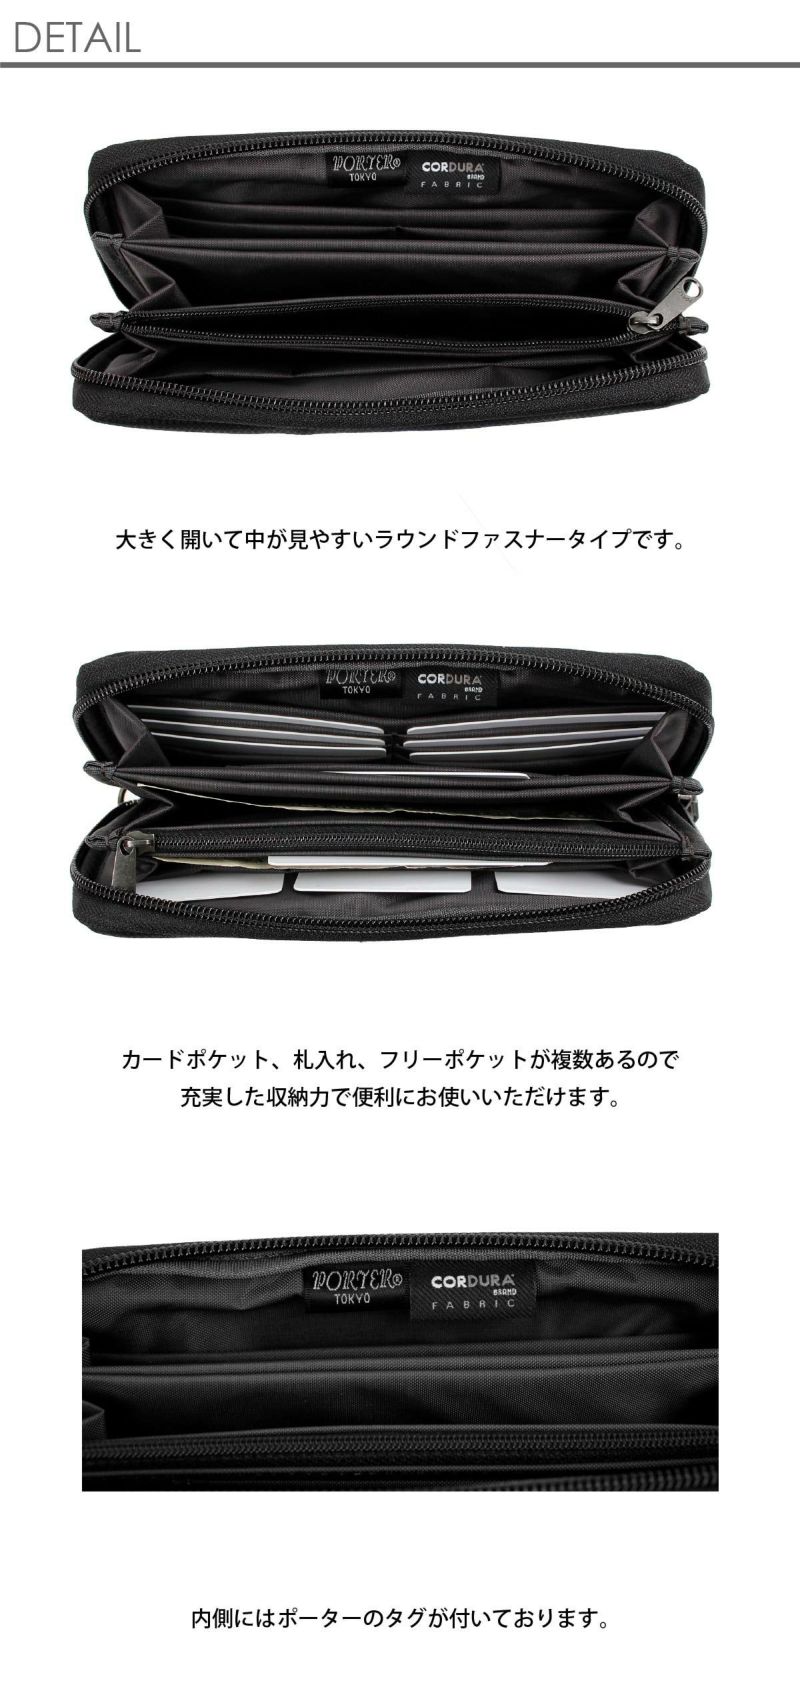 【新品】ポーター porter ジップウォレット 653-09111 吉田カバンファッション